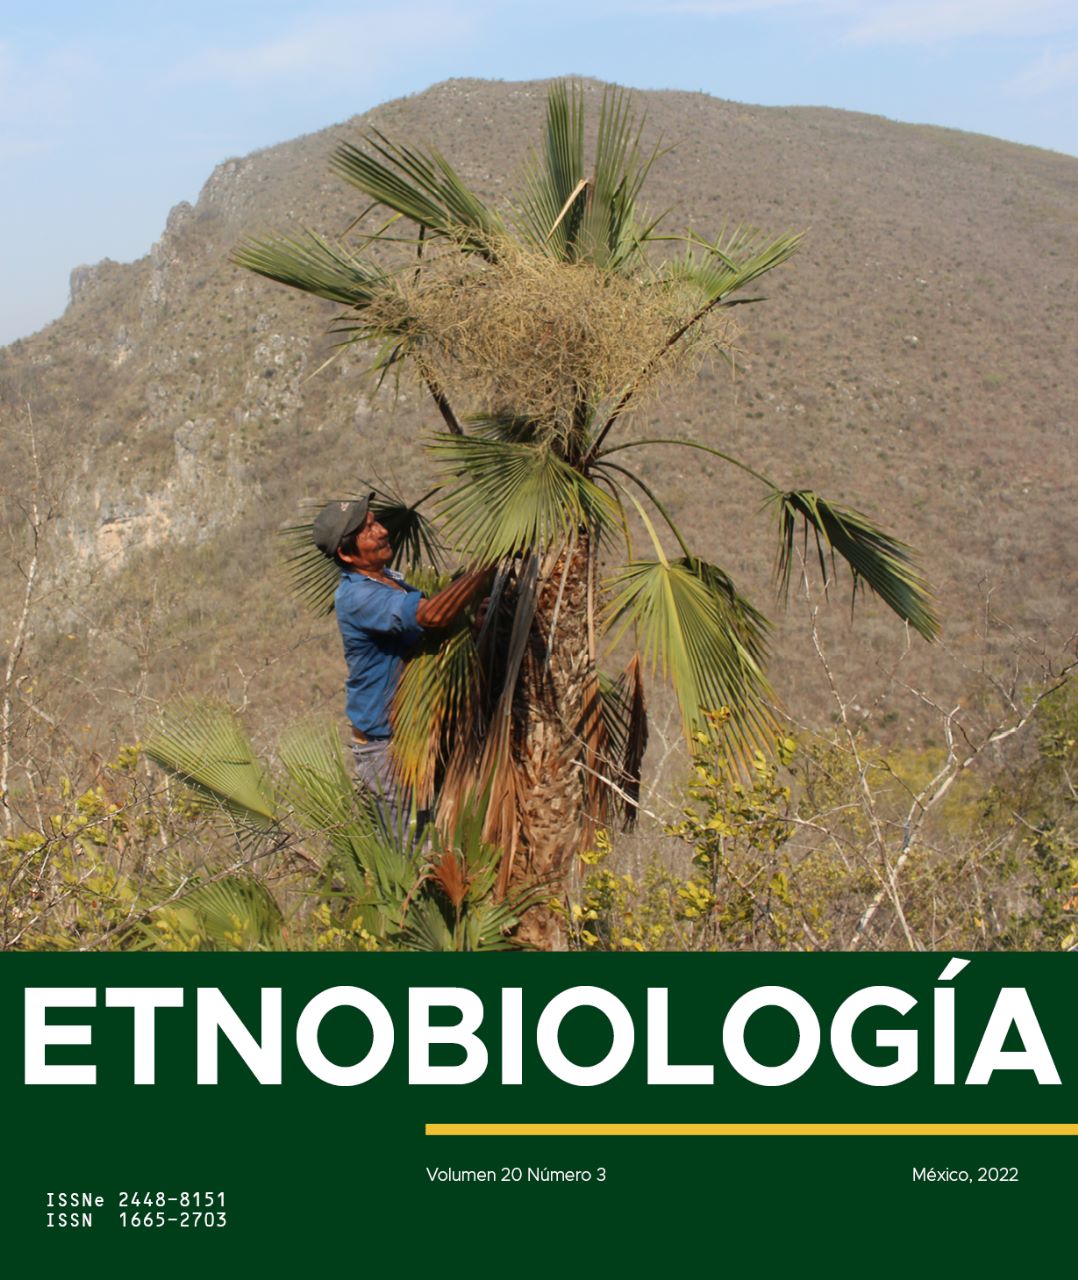 NUESTRA PORTADA: Don Fortino, artesano de la Sierra Gorda, Querétaro, México, recolectando hojas de palma Brahea berlandieri. Foto: David Bravo Avilez.